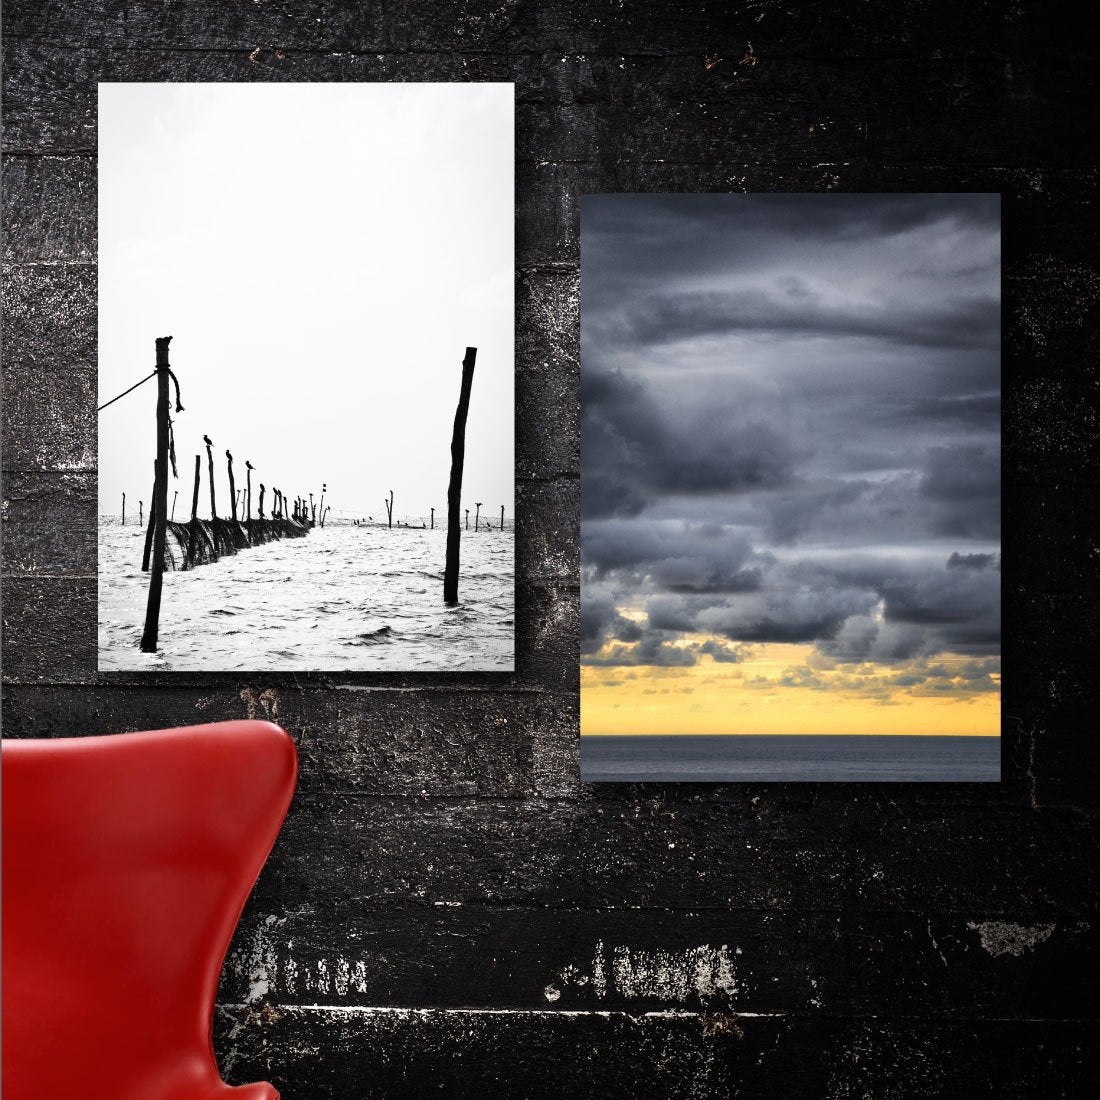 2 danske naturplakater med bundgarnspæle og lave skyer